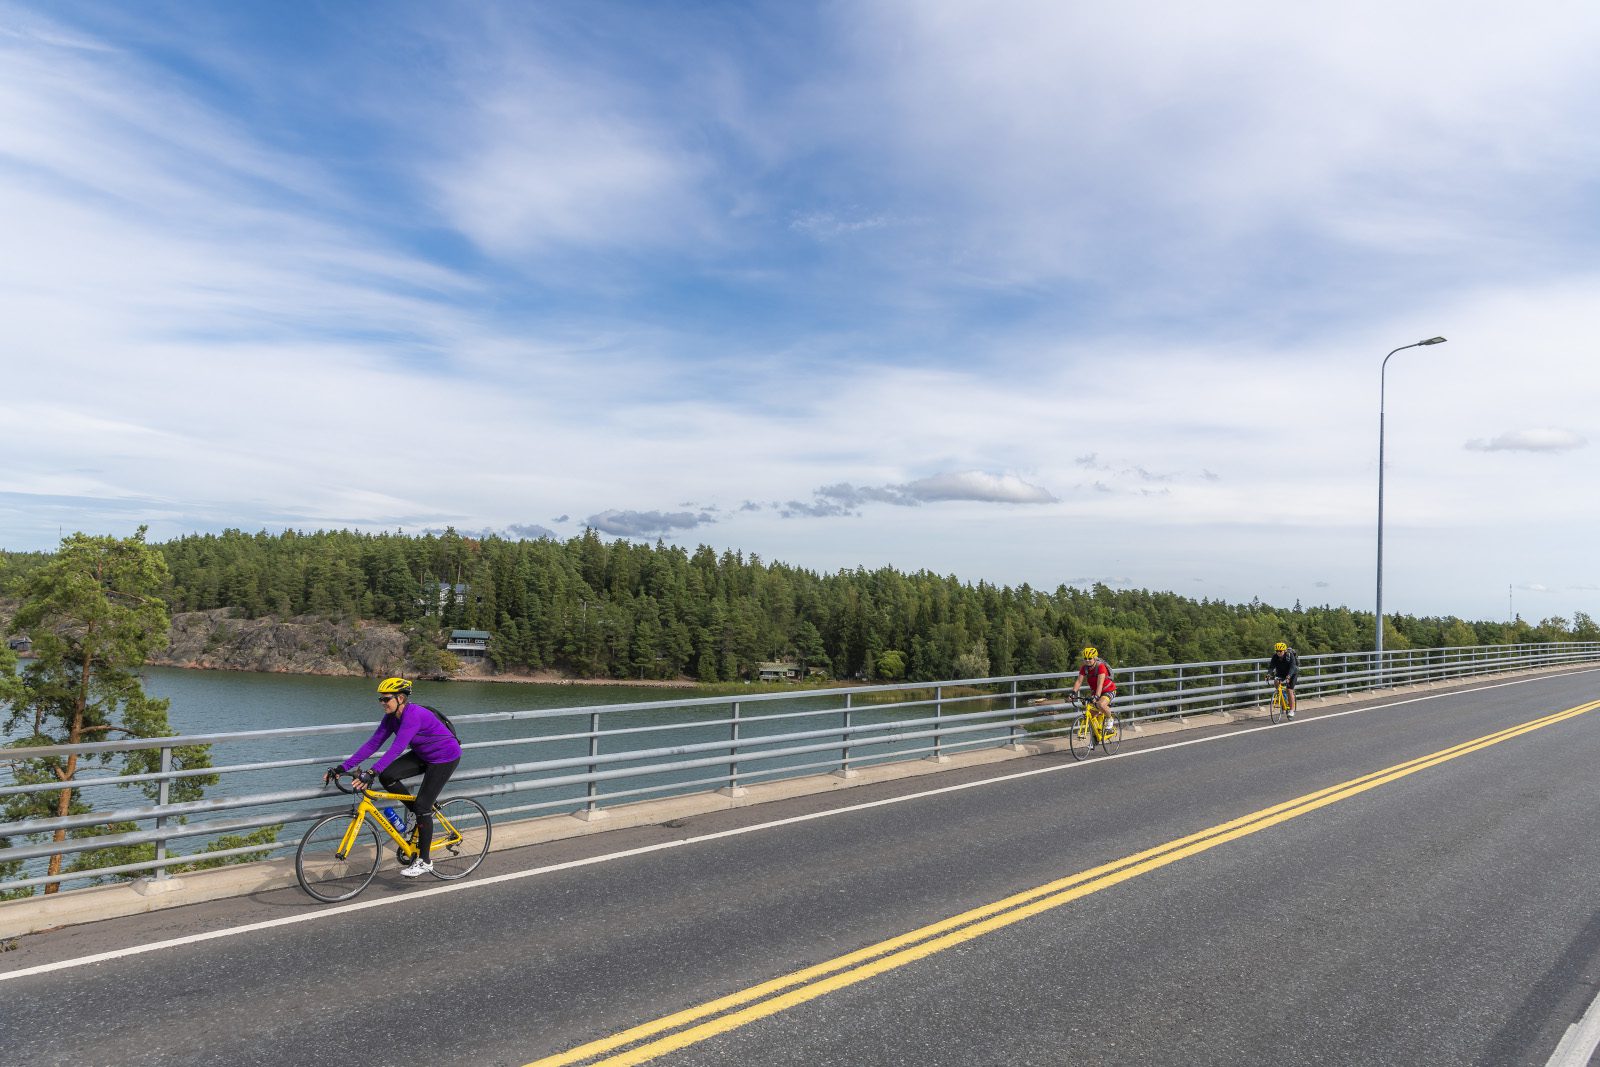 Kolme pyöräilijää pyöräilee sillan yli. Merta ja saarta näkyy sillan kaiteen takana.